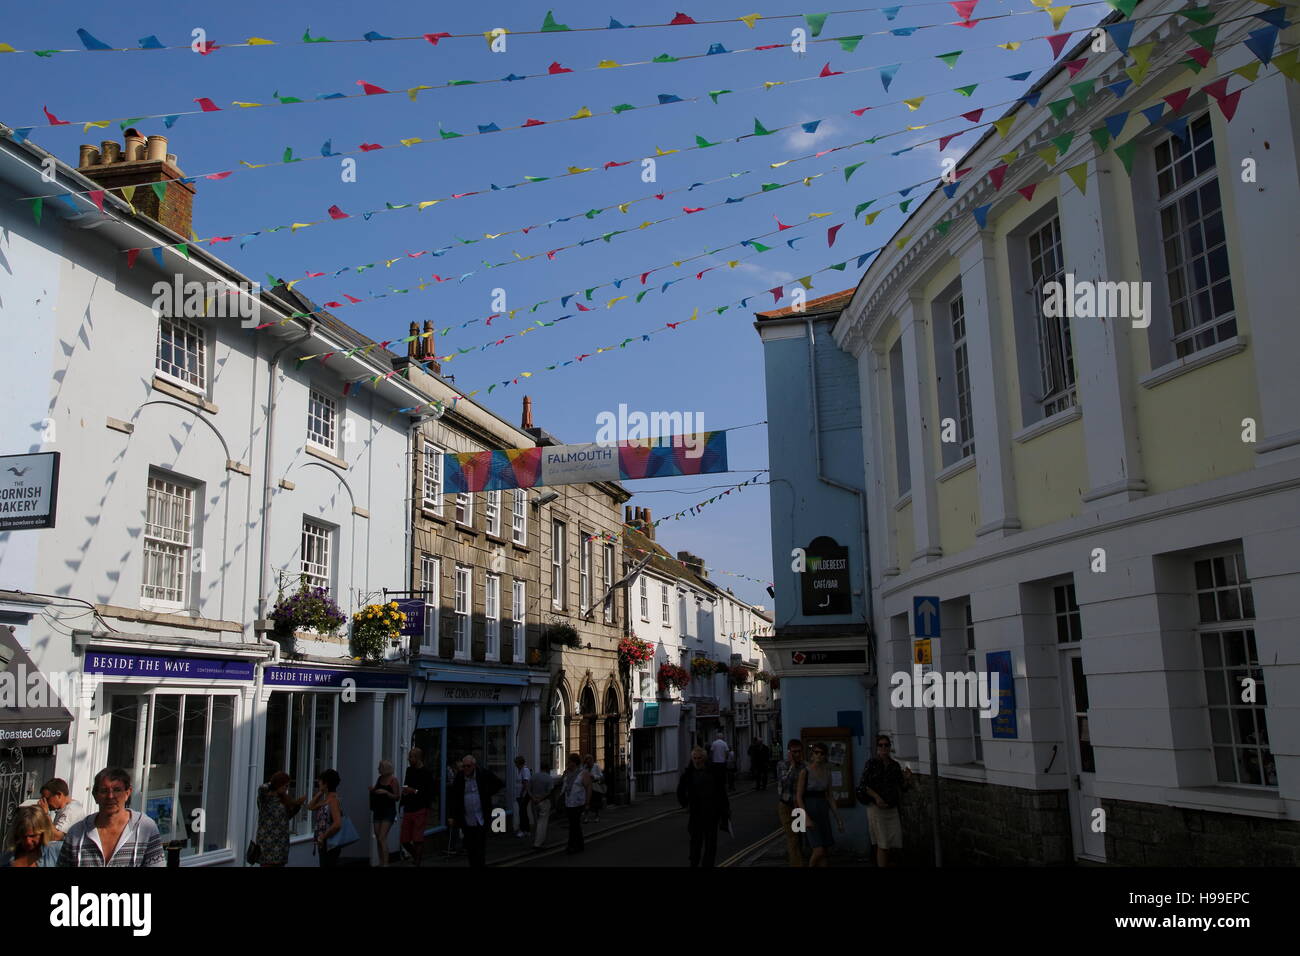 Bunting banderas ondeando en la calle del centro de la ciudad, Falmouth, Cornwall, Inglaterra, Reino Unido. Foto de stock